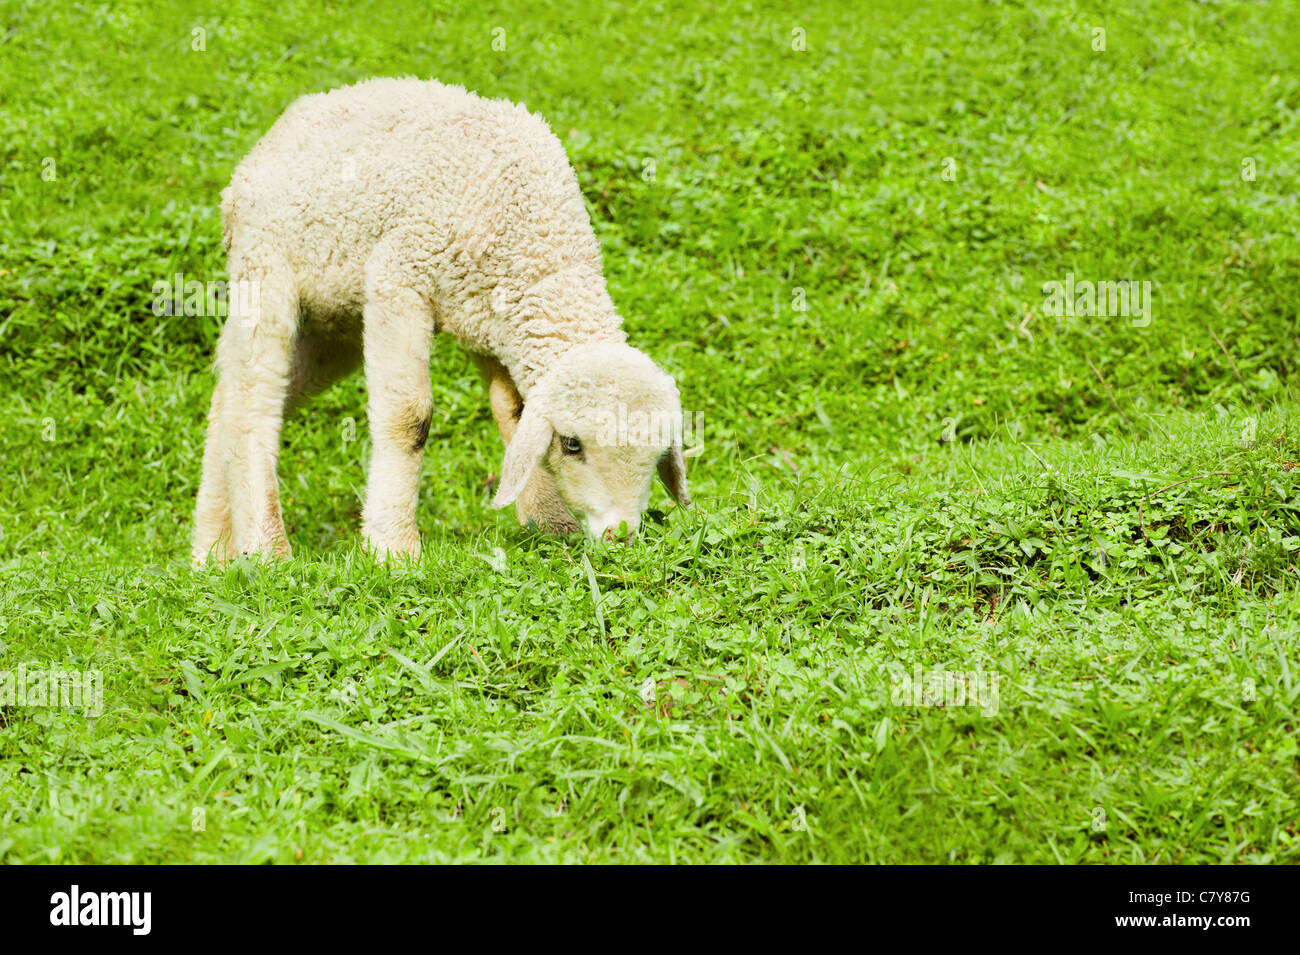 Bébé mouton dans un pâturage d'herbe verte Banque D'Images